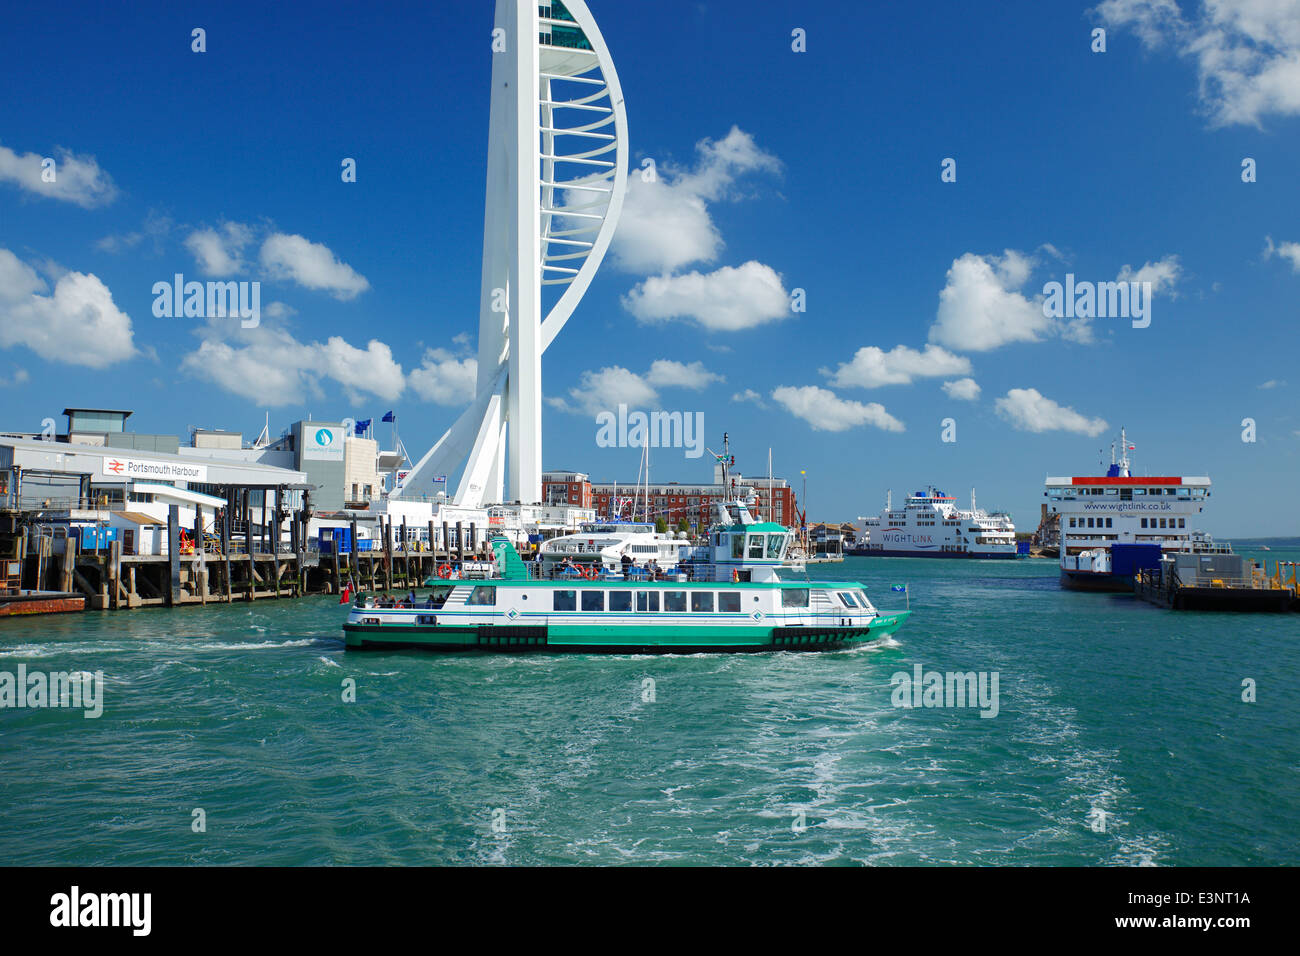 Spirit of Gosport passenger ferry, Portsmouth Harbour. Stock Photo